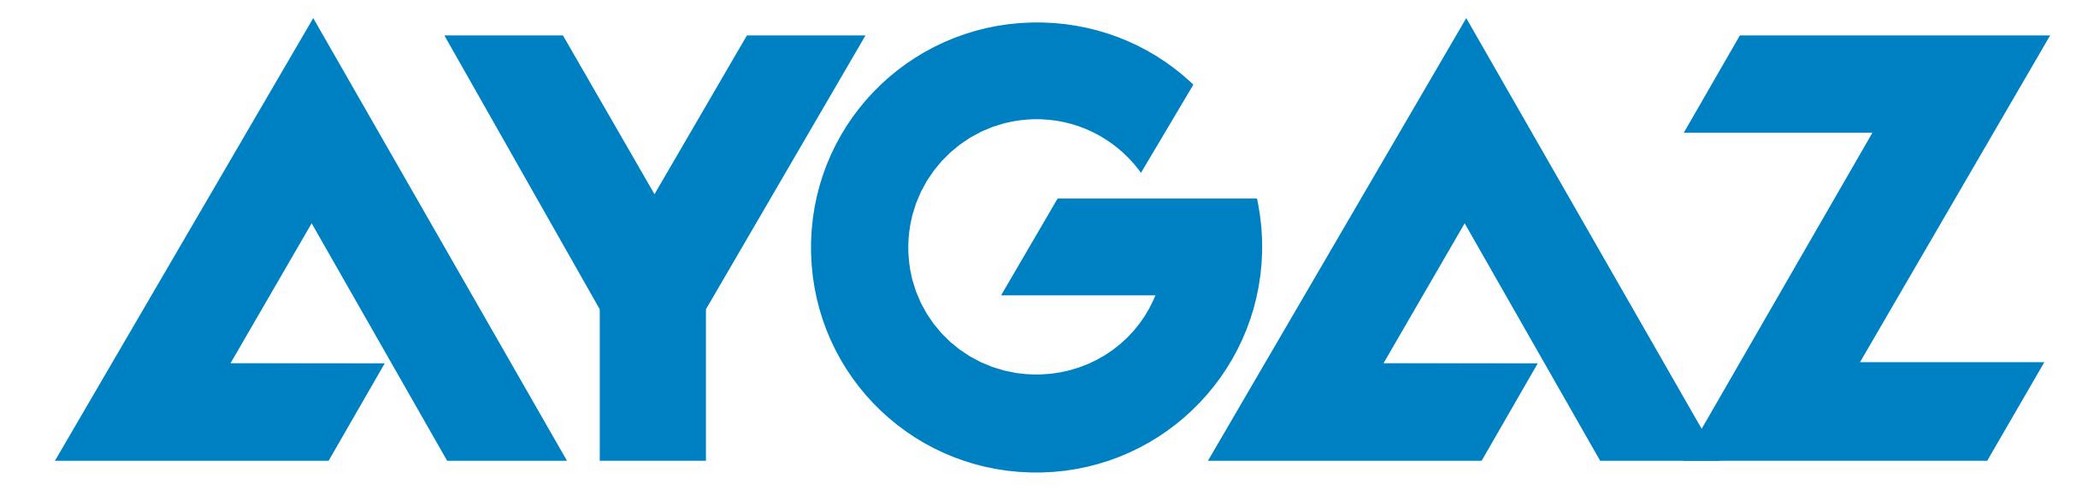 Celcom Logo Vector logo